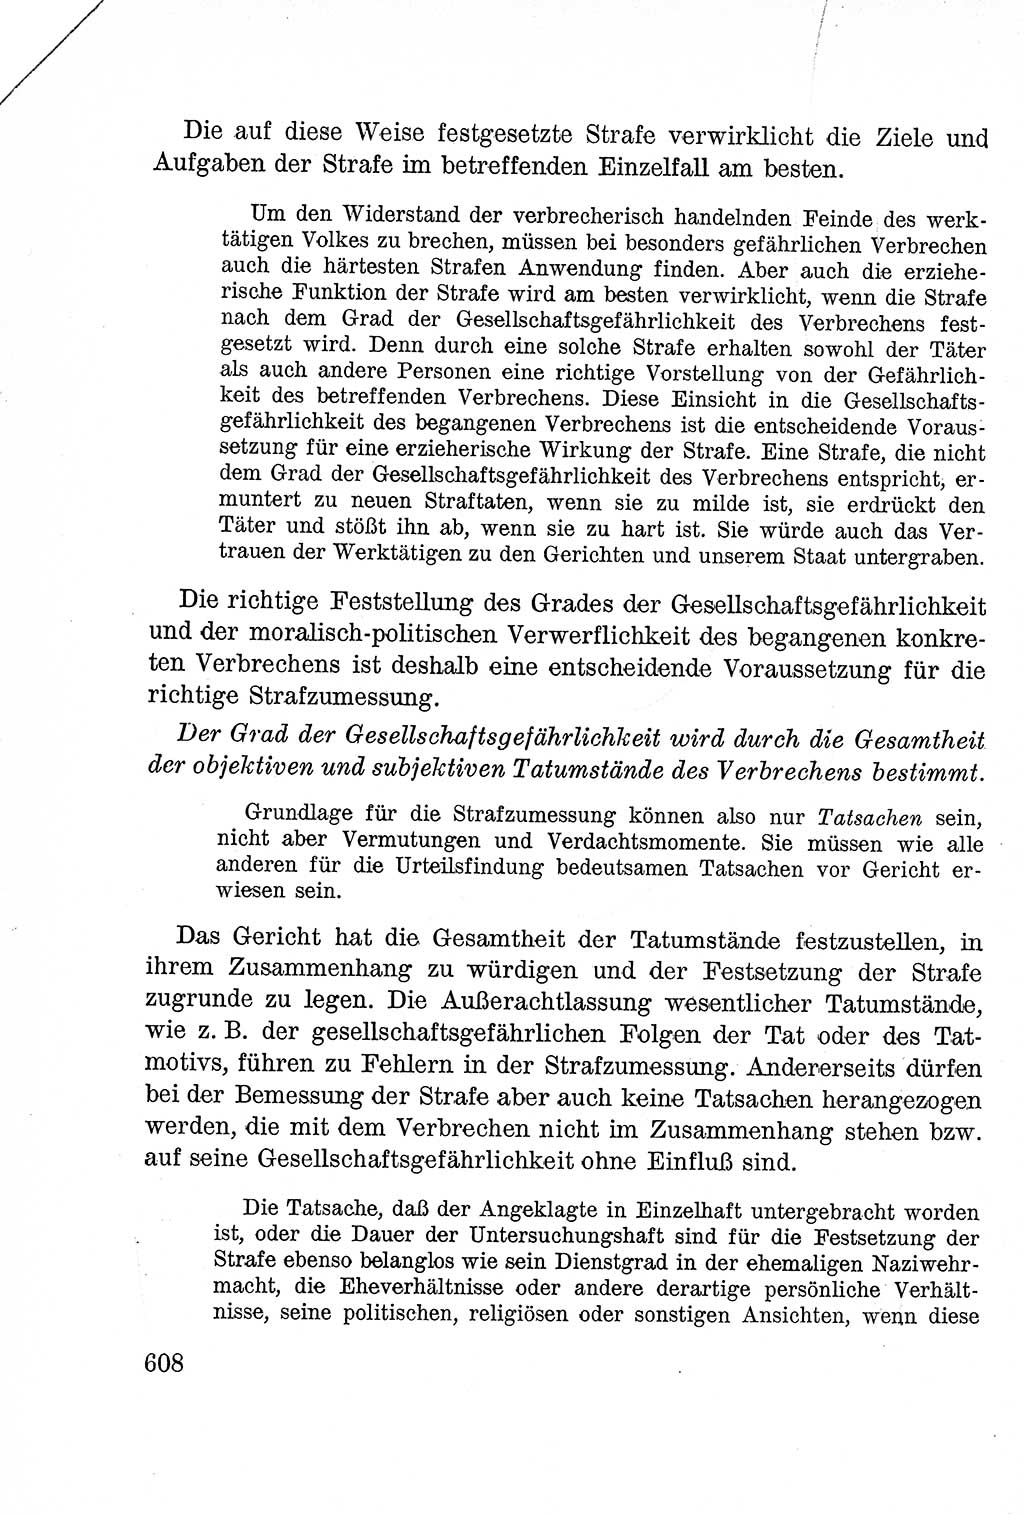 Lehrbuch des Strafrechts der Deutschen Demokratischen Republik (DDR), Allgemeiner Teil 1957, Seite 608 (Lb. Strafr. DDR AT 1957, S. 608)